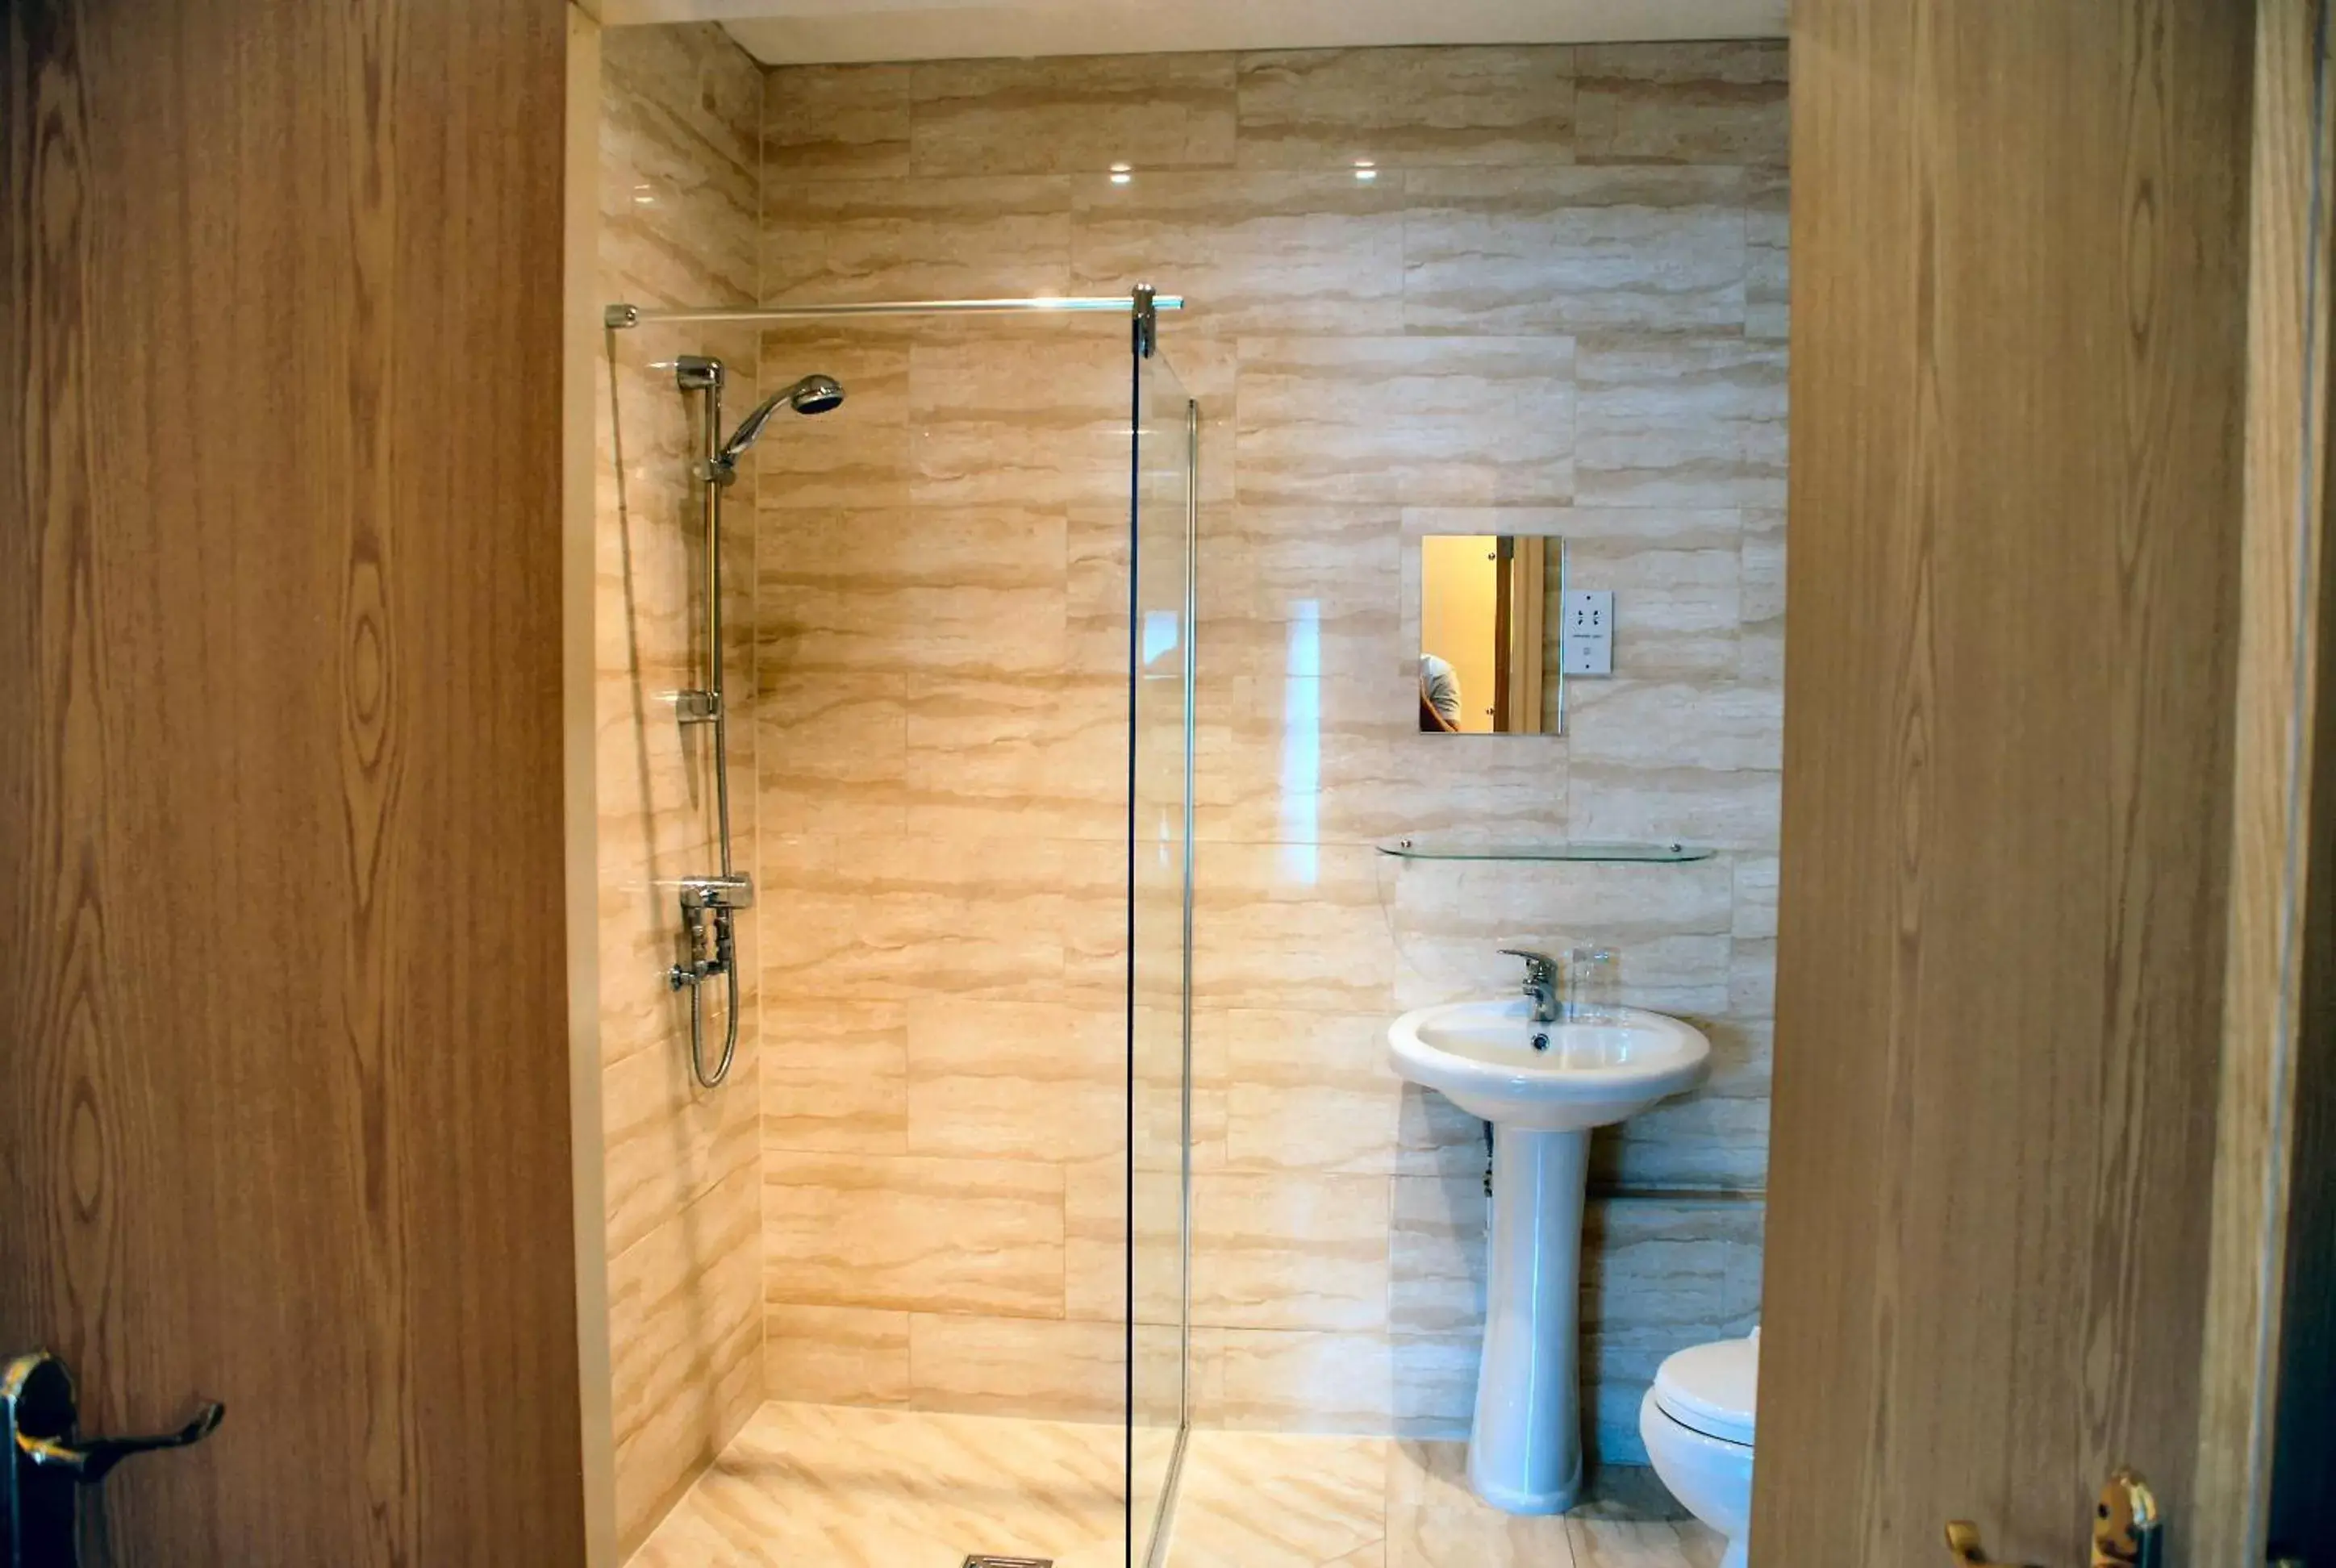 Shower, Bathroom in Beech Mount Hotel